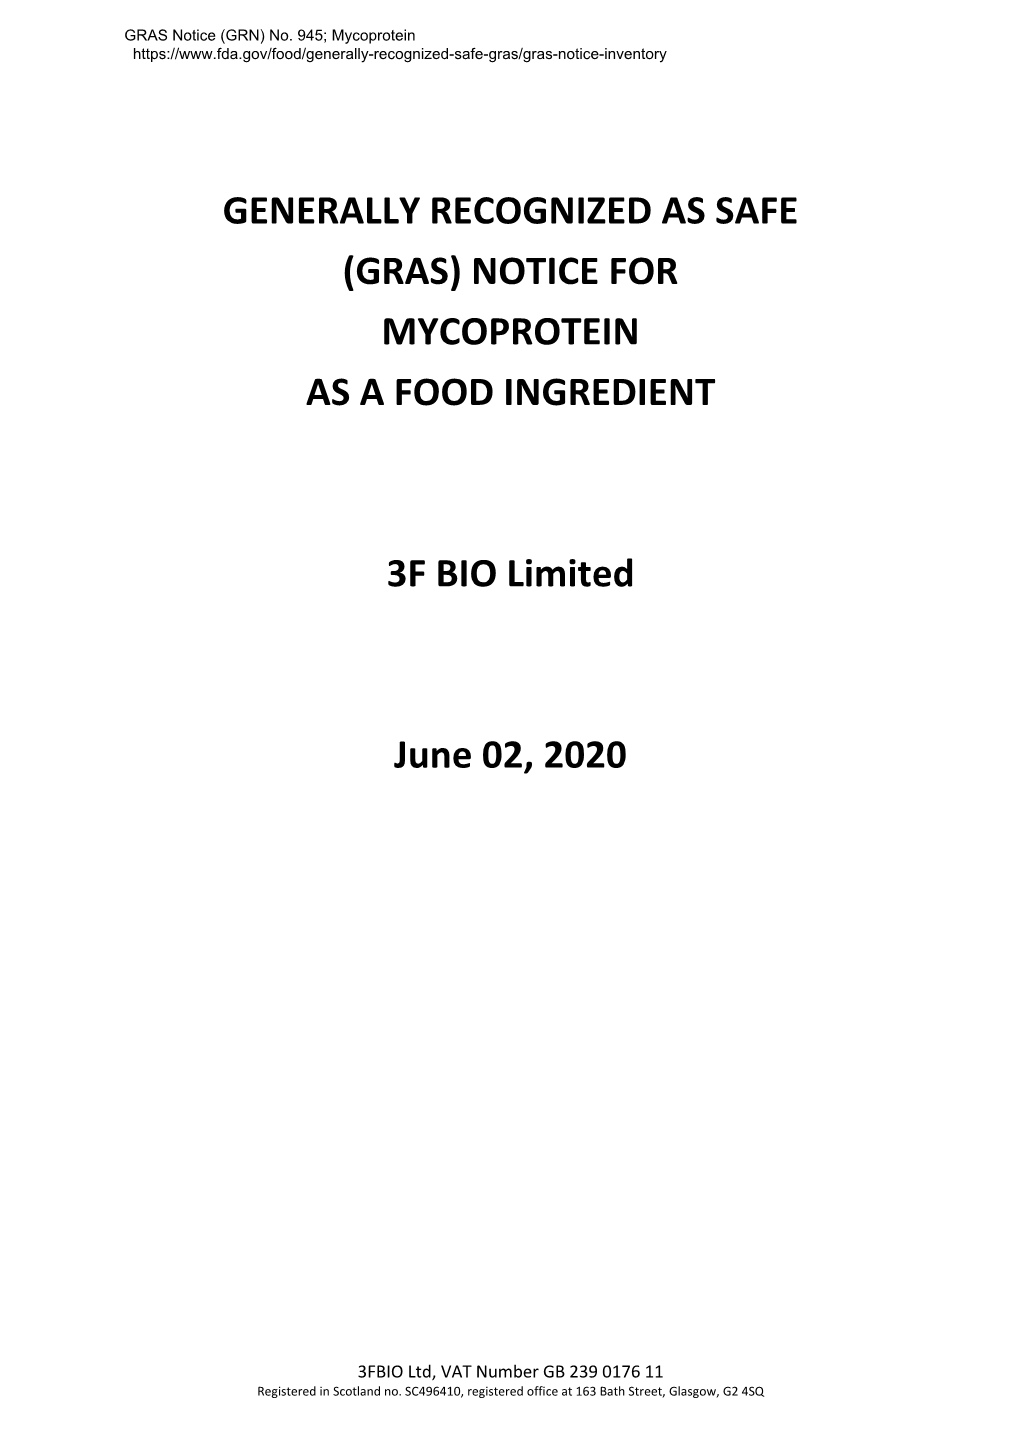 GRAS Notice GRN 945, Mycoprotein